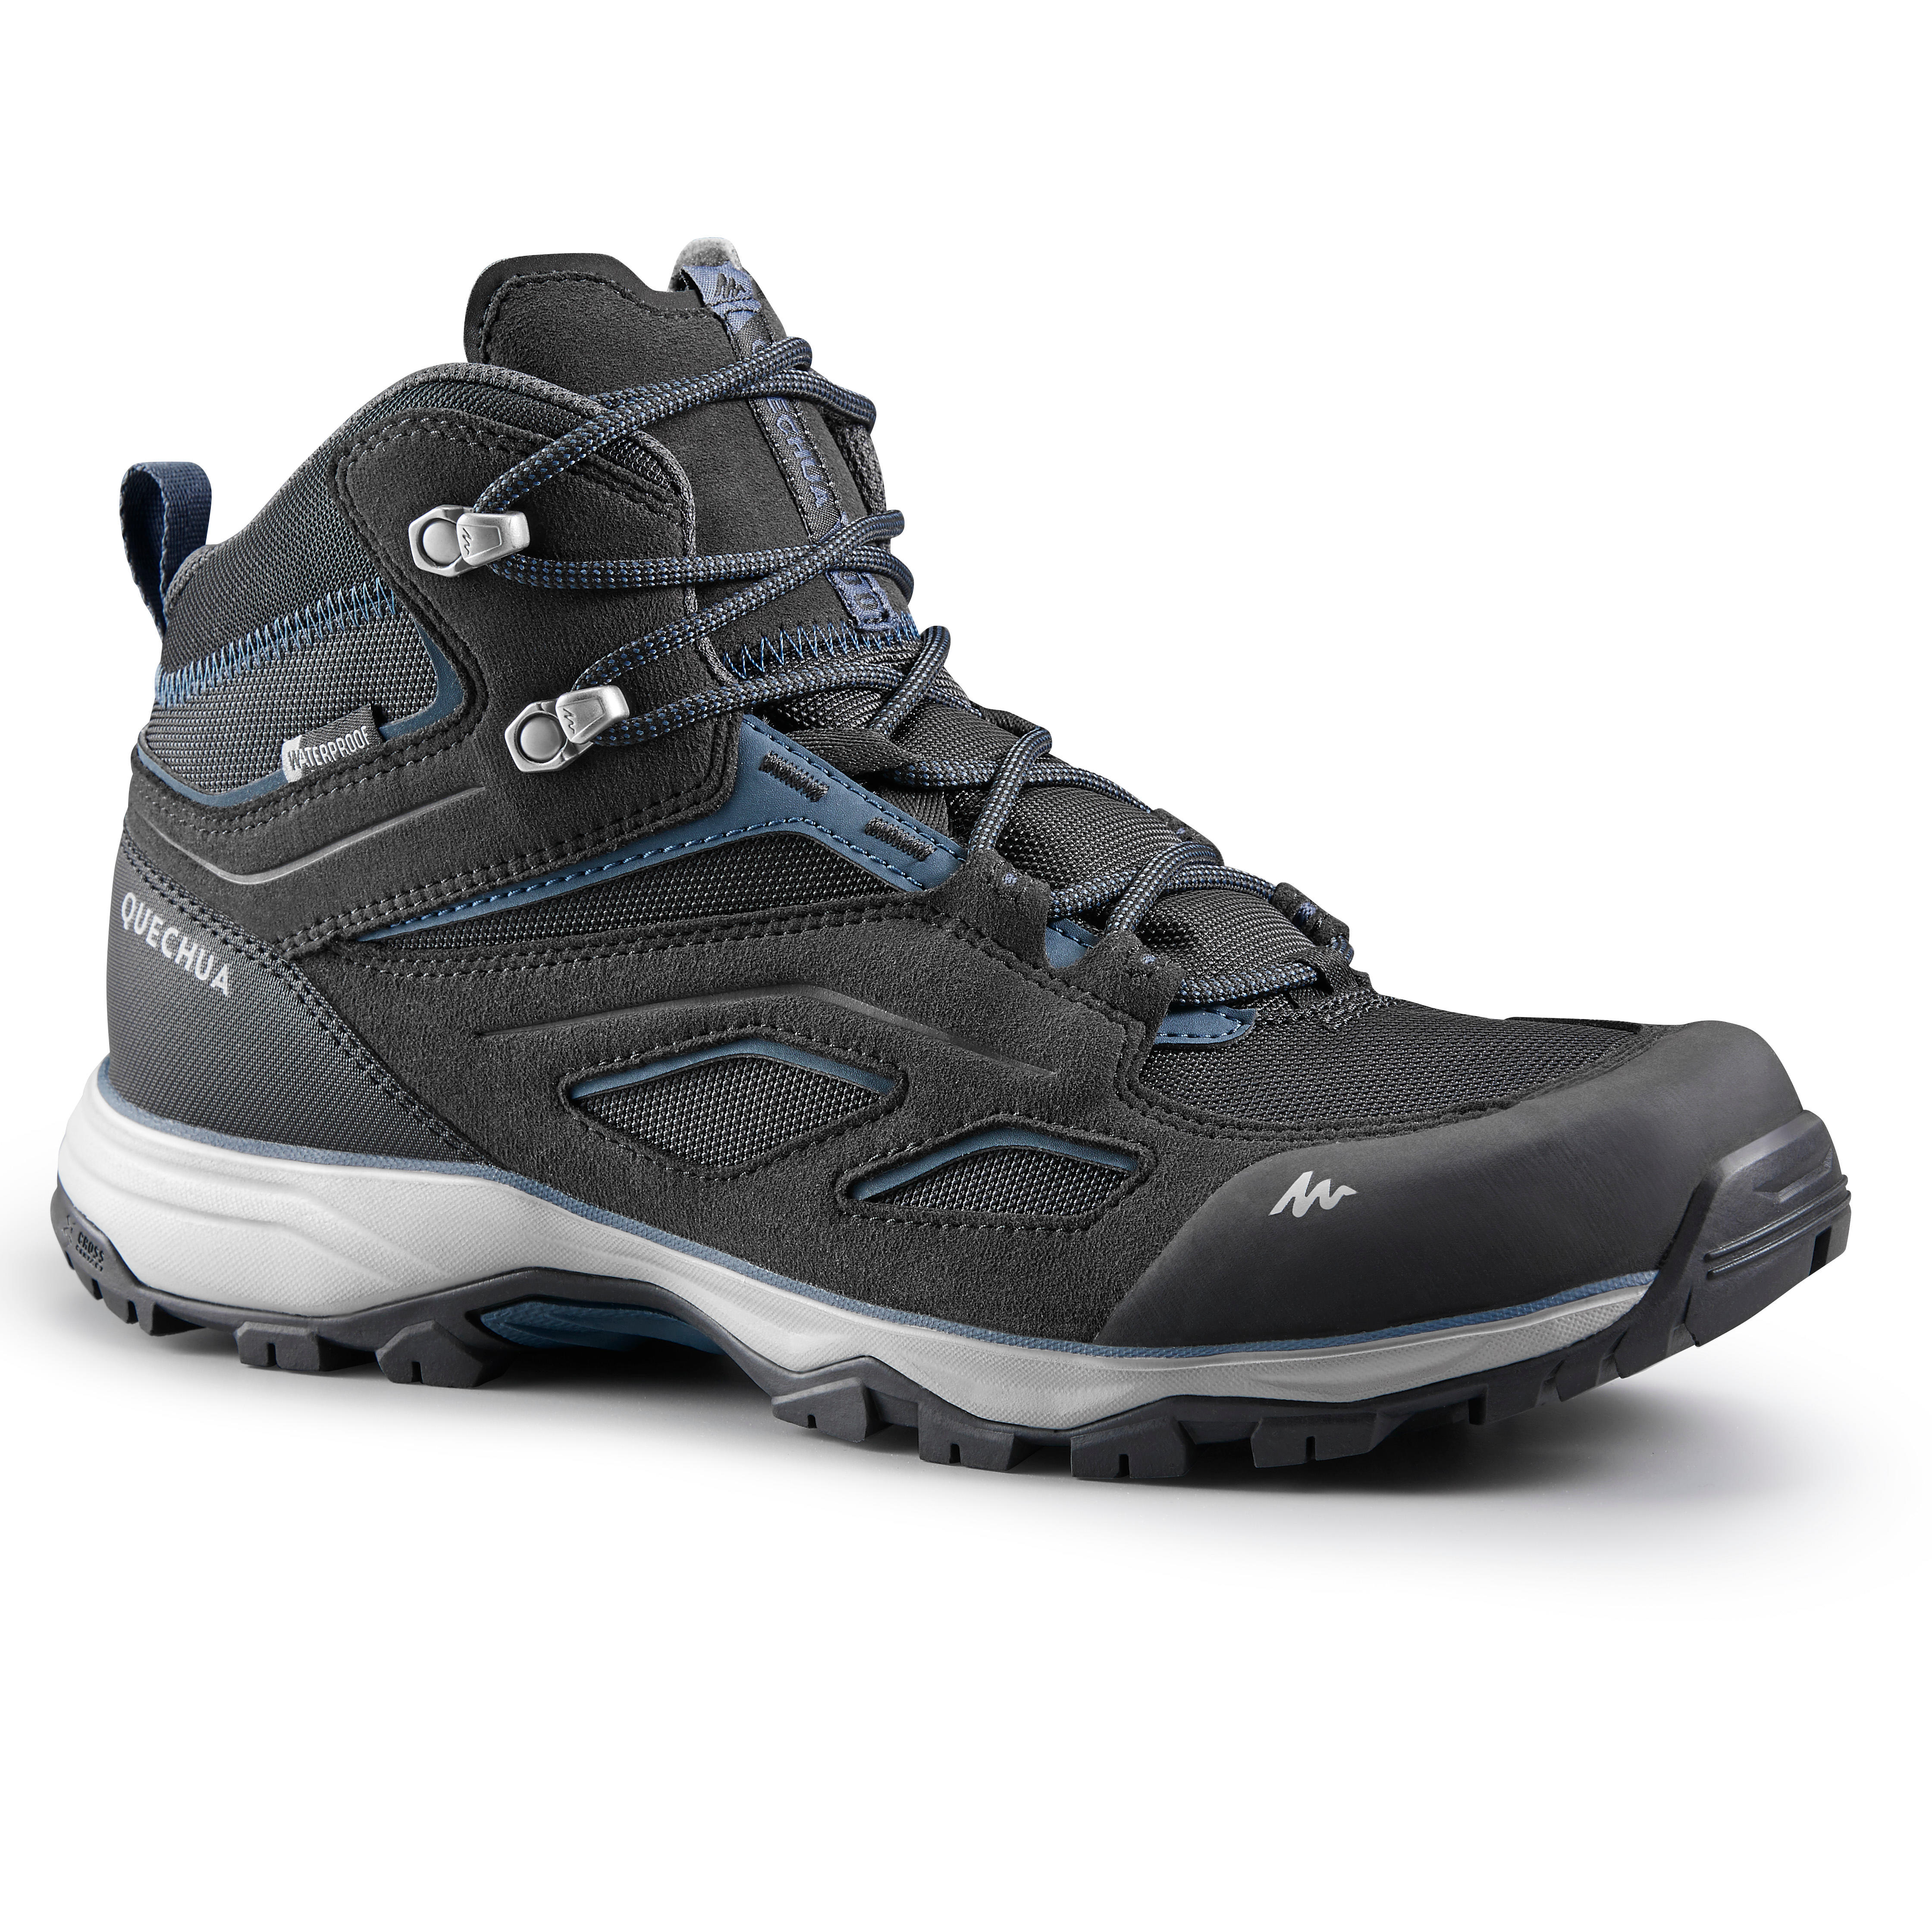 QUECHUA Chaussures imperméables de randonnée montagne - MH100 Mid Noir - Homme - QUECHUA - 41